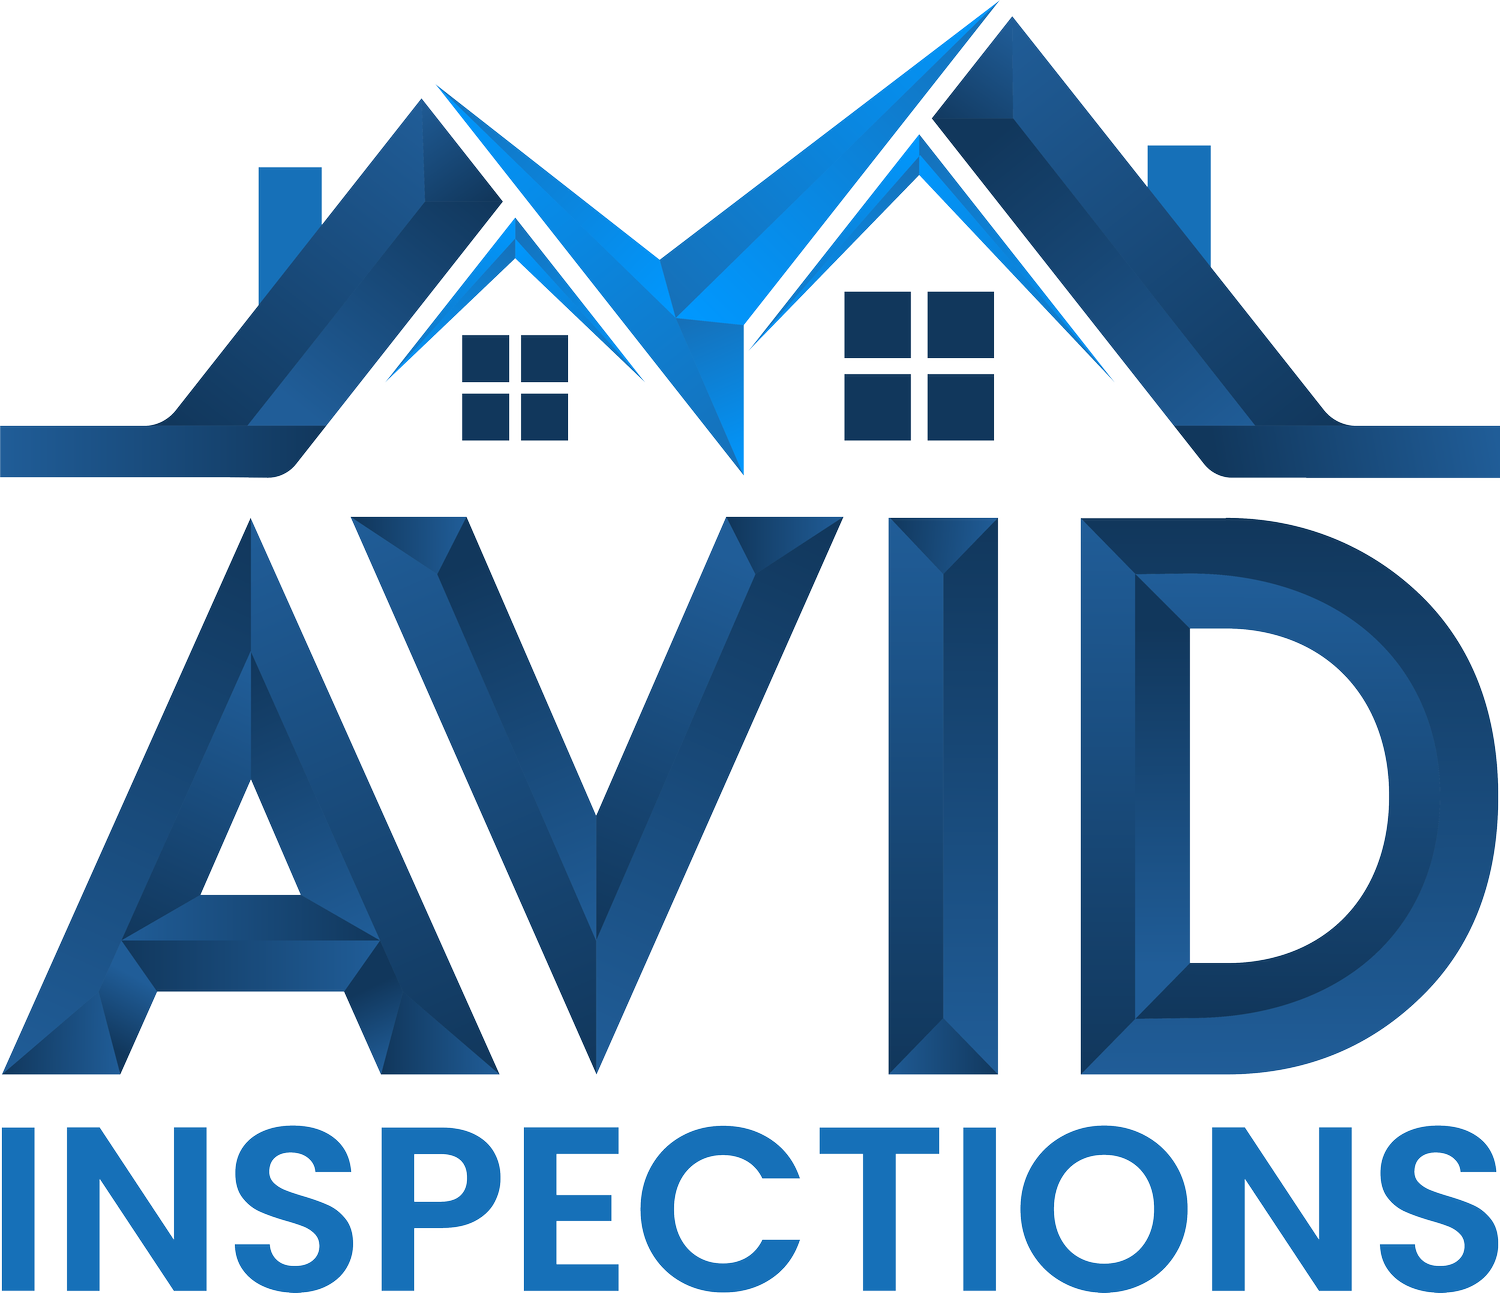 AVID Inspections